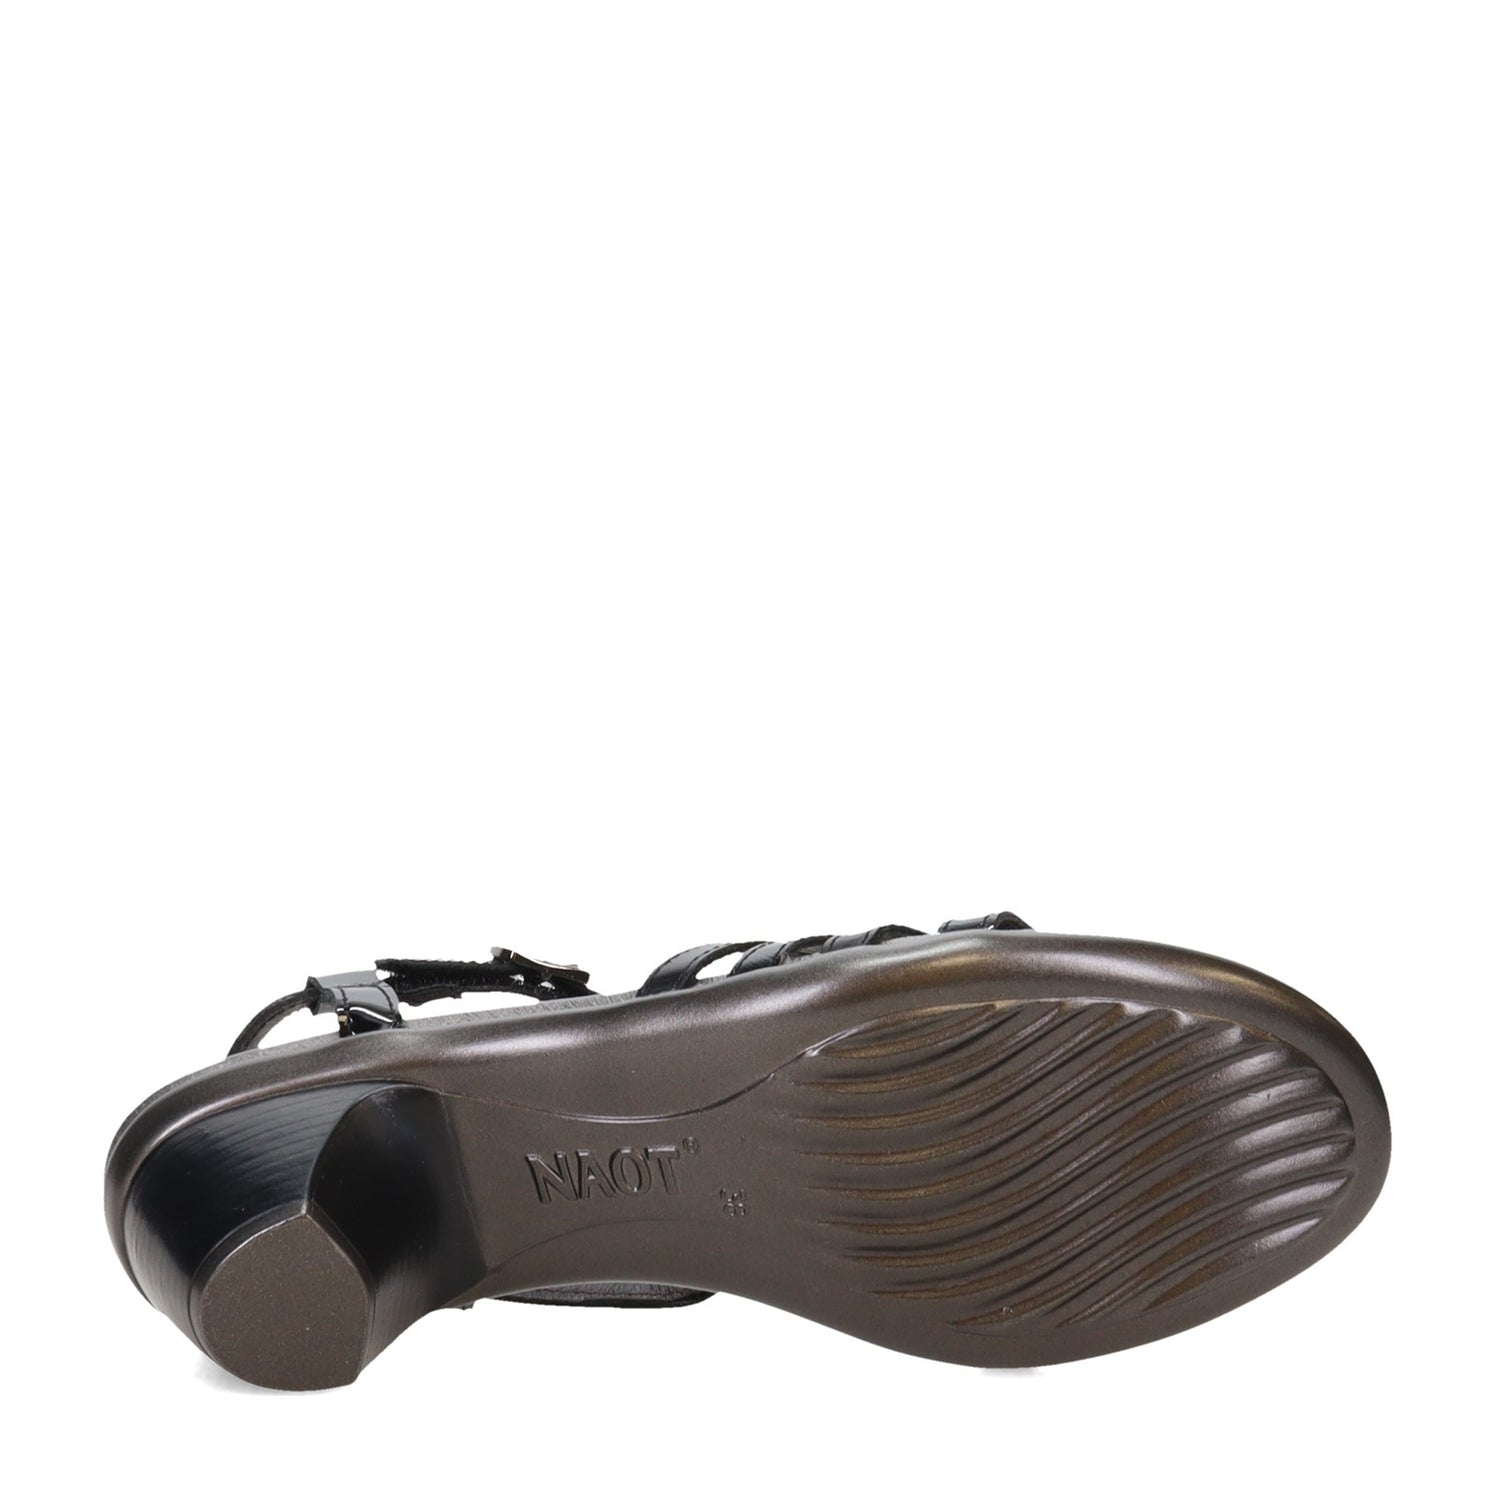 Peltz Shoes  Women's Naot Current Sandal Black 40015-NXH